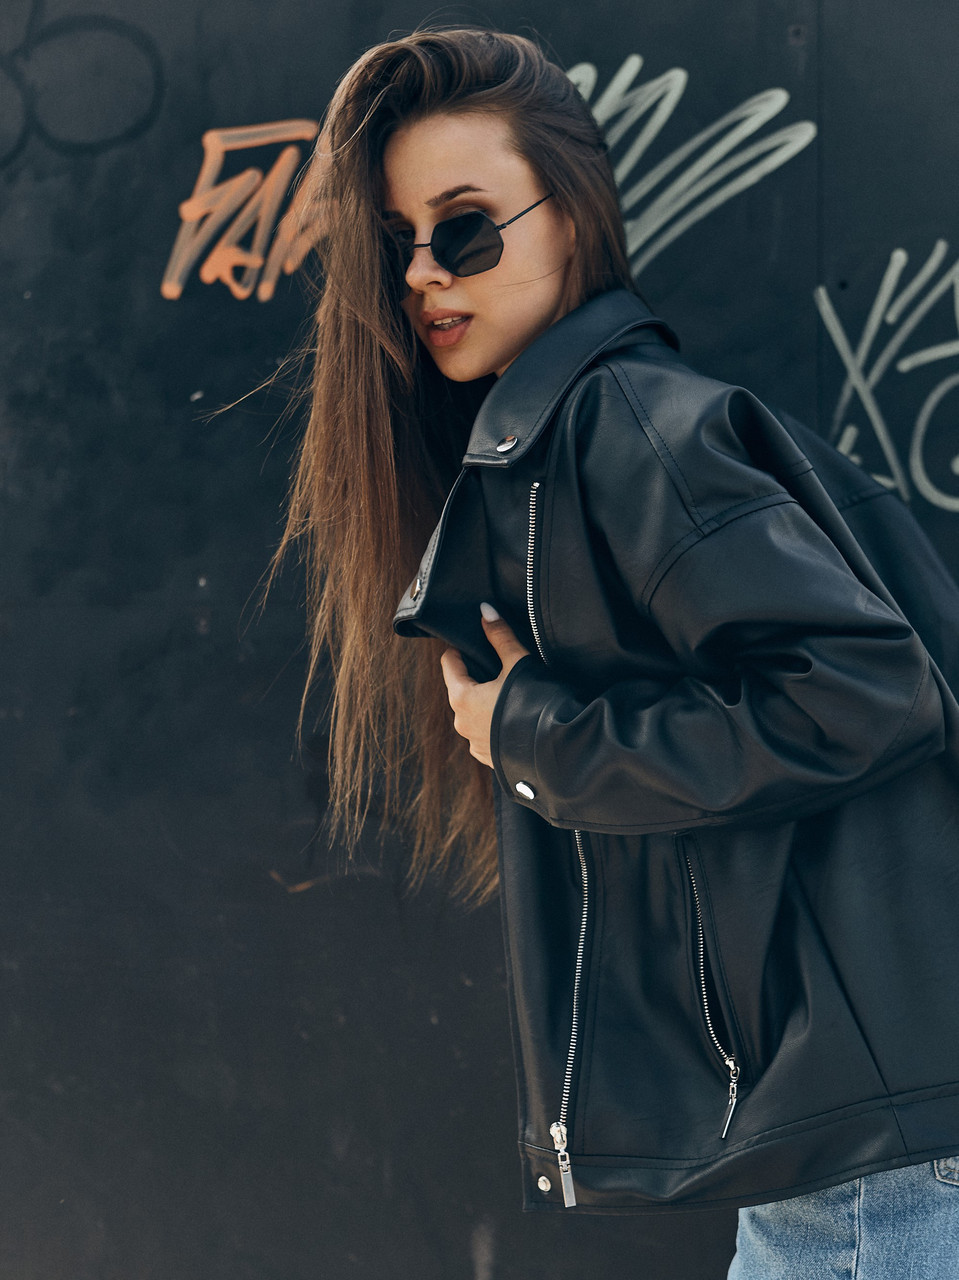 Косуха оверсайз женская, удлиненная черная бренд TUR модель Аманда, размер S, M TURWEAR - Фото 4